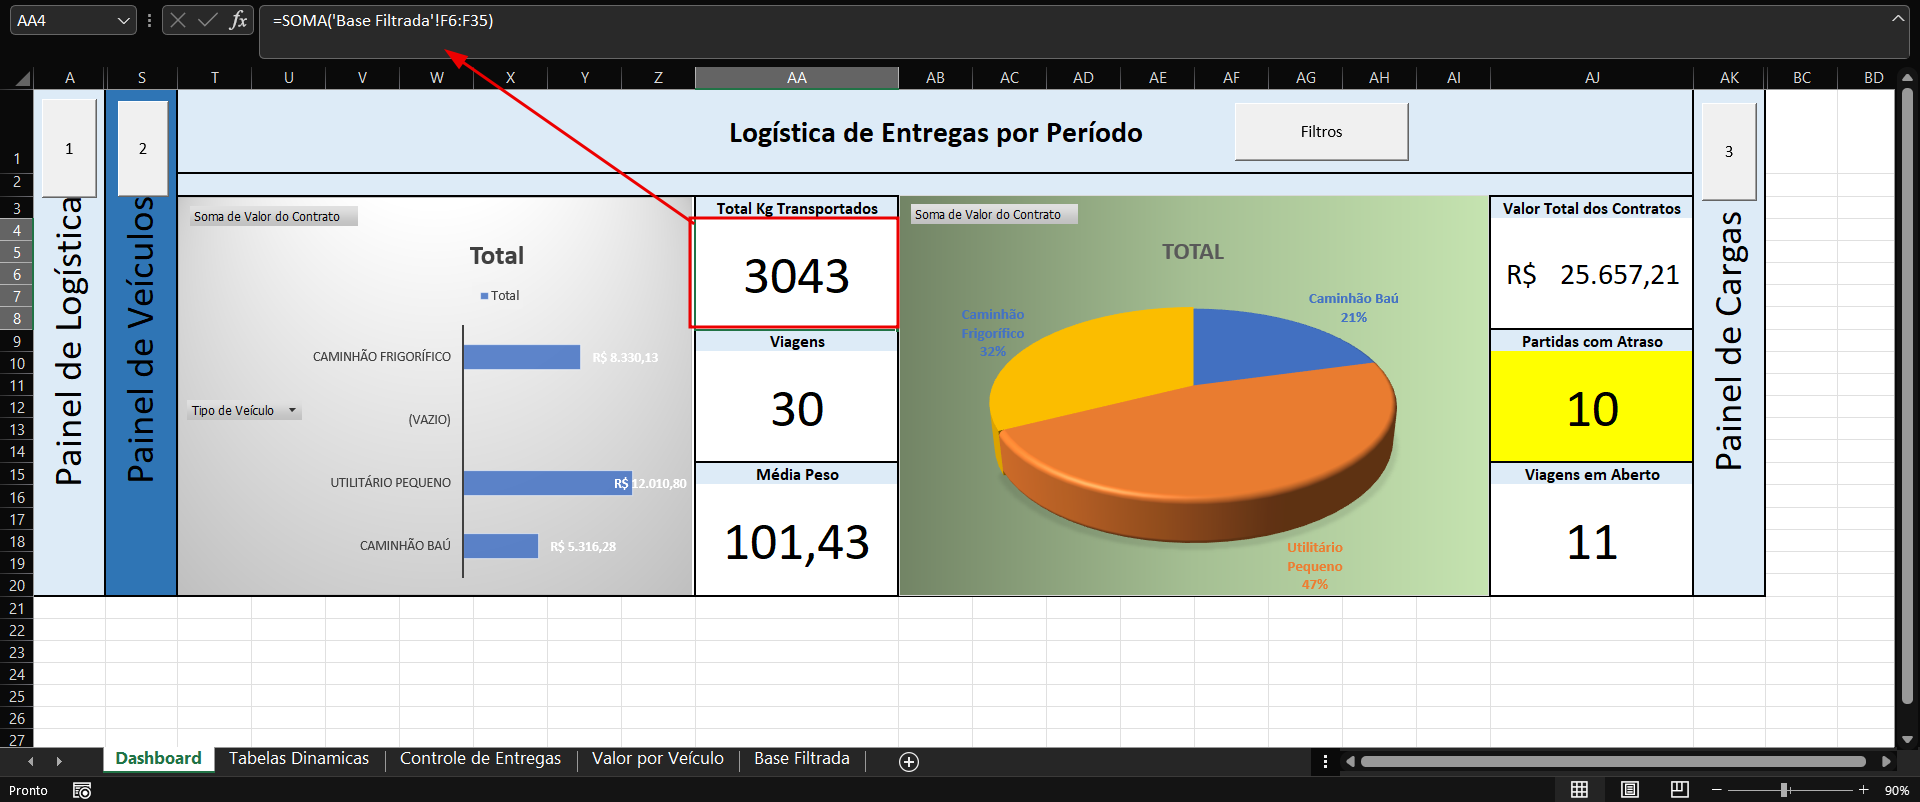 Dashboard no Excel de Logística de entregas por período. A fórmula para o indicado total de kg transportados está em destaque com uma seta indicando a barra de fórmulas na parte superior da imagem. A fórmula é =SOMA('Base Filtrada'!F6:F35)